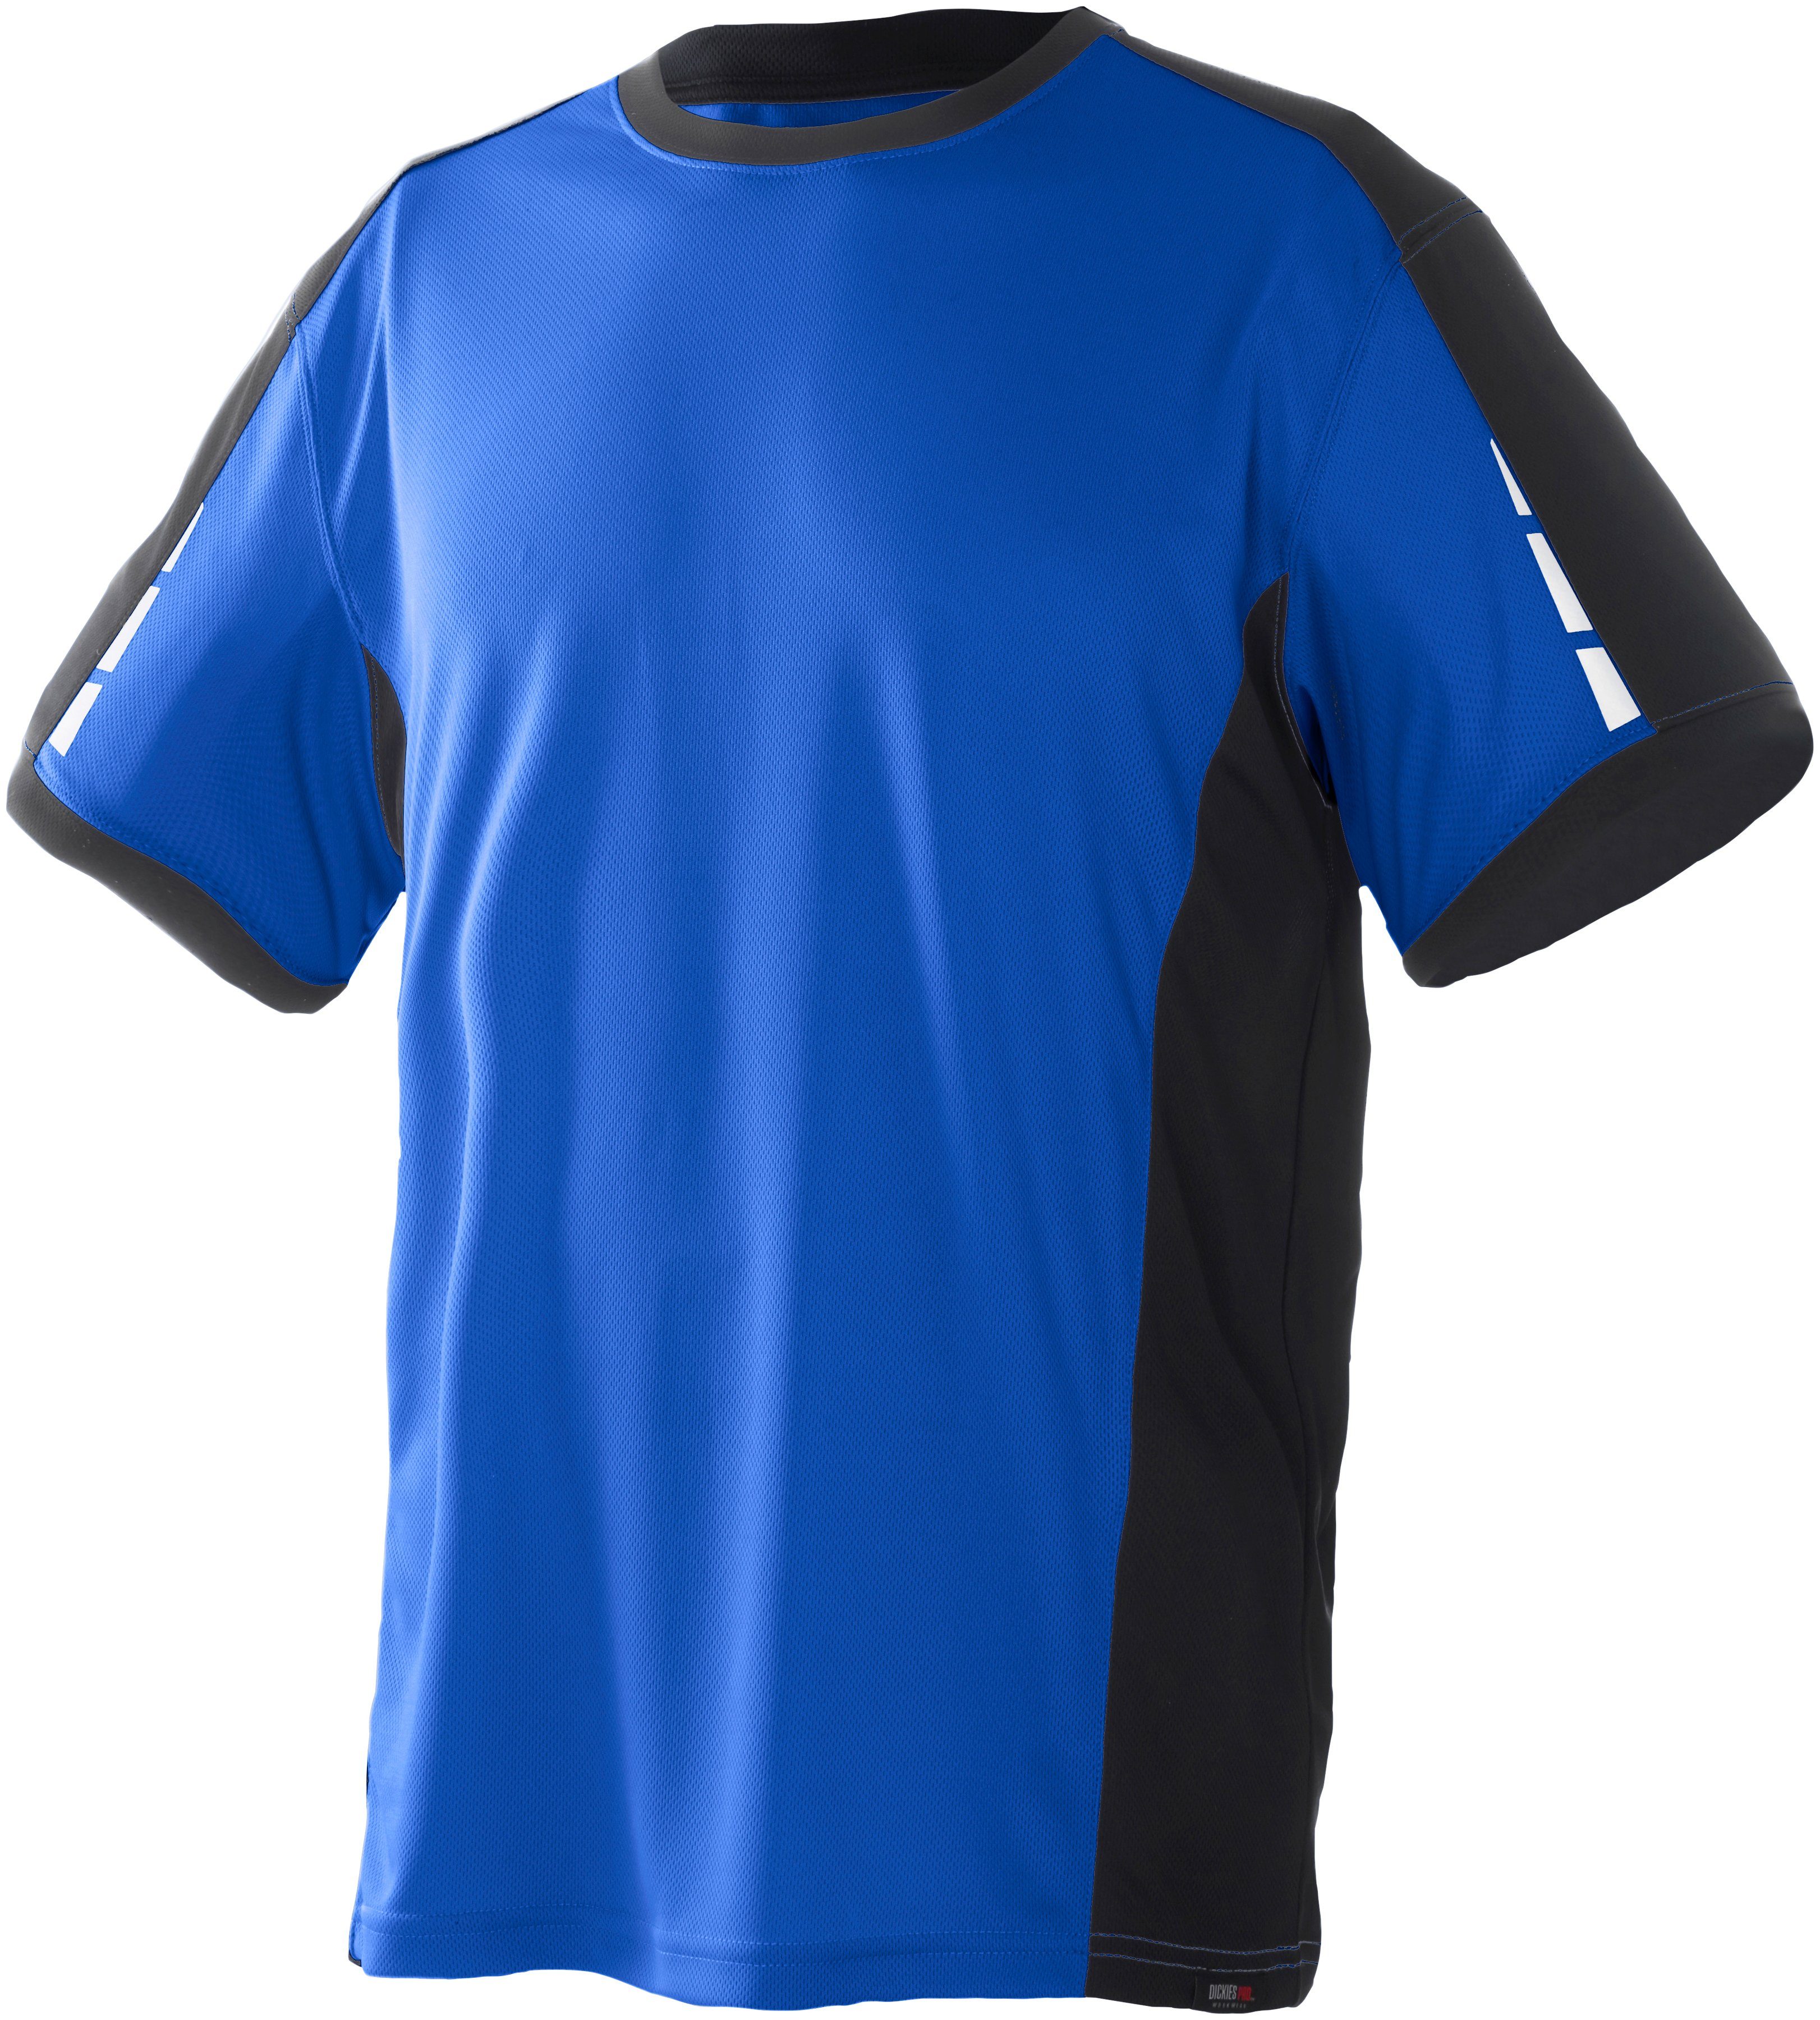 Dickies T-Shirt Pro mit reflektierenden Details an den Ärmeln royalblau-schwarz